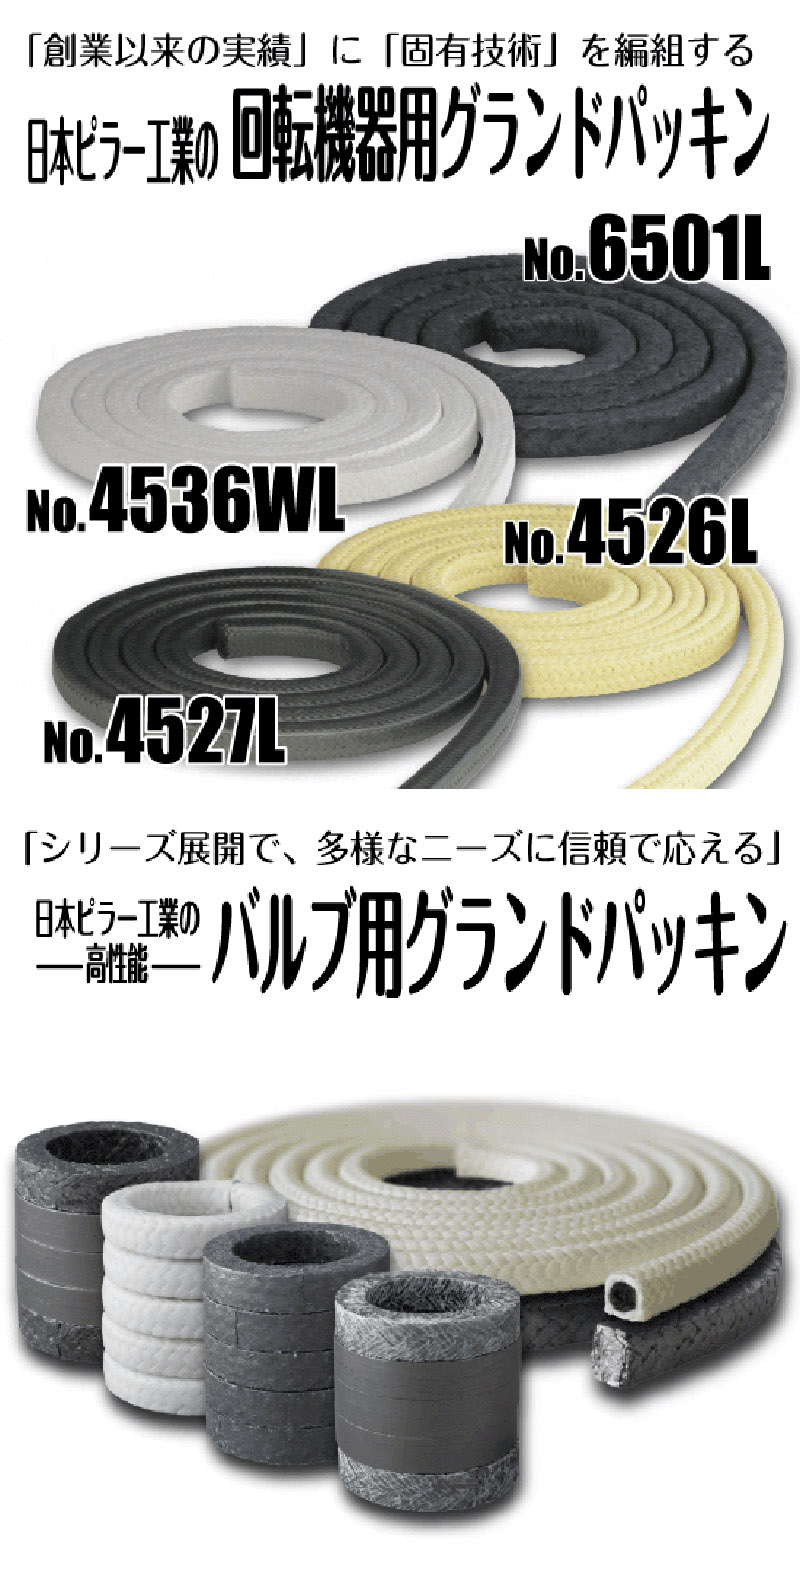 受注生産品 日本ピラー グランドパッキン No.6501L 20.5mm×3m 炭化繊維グランドパッキン 自吸式ポンプ 渦巻ポンプ シール 部品 